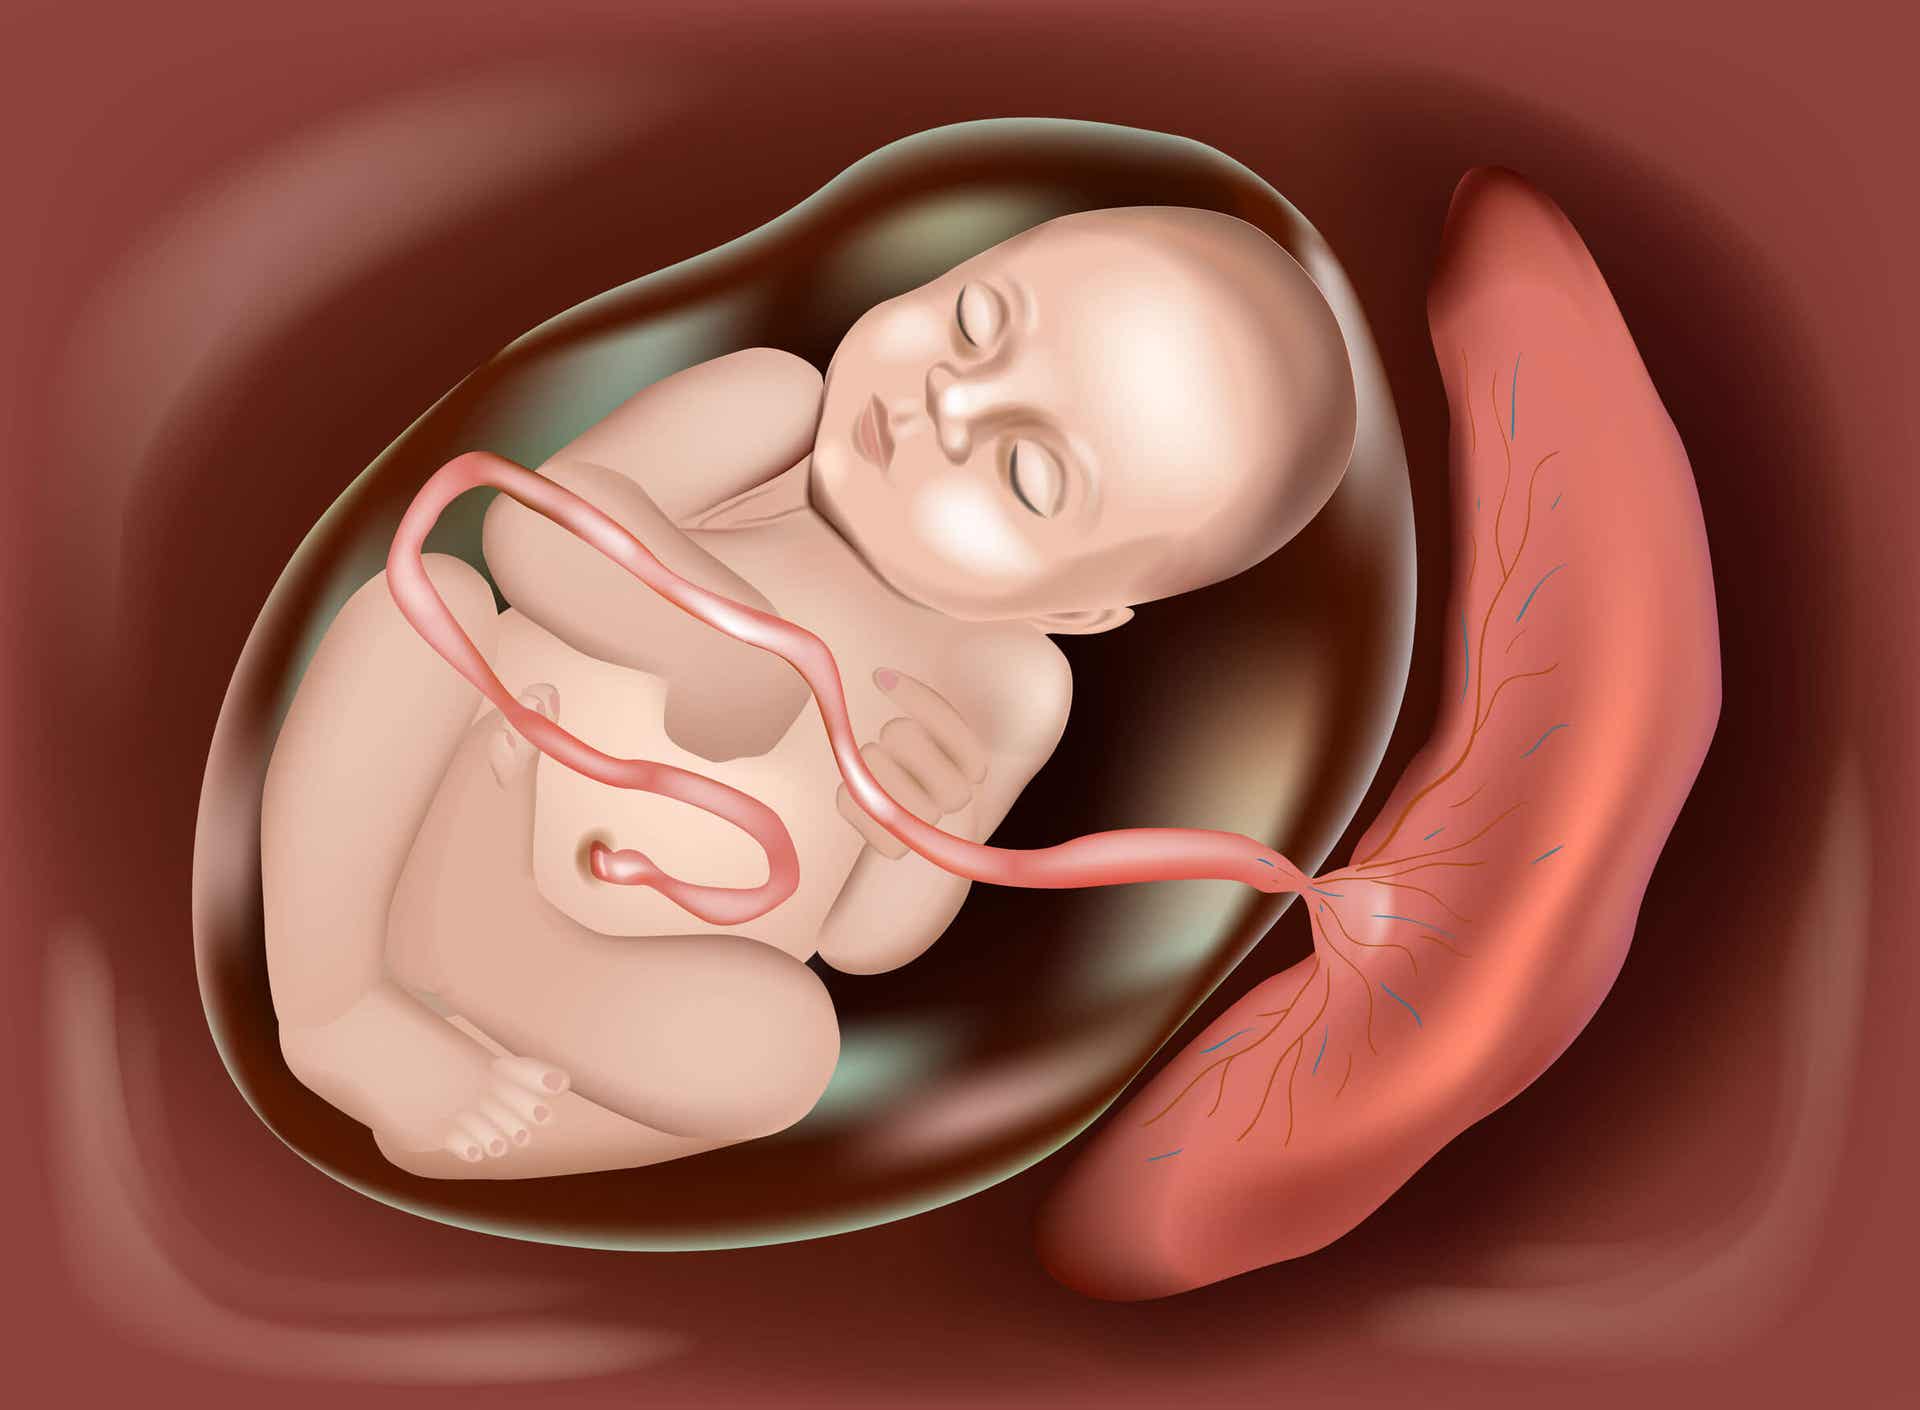 Komputerowy rysunek dziecka w macicy połączonego z łożyskiem.